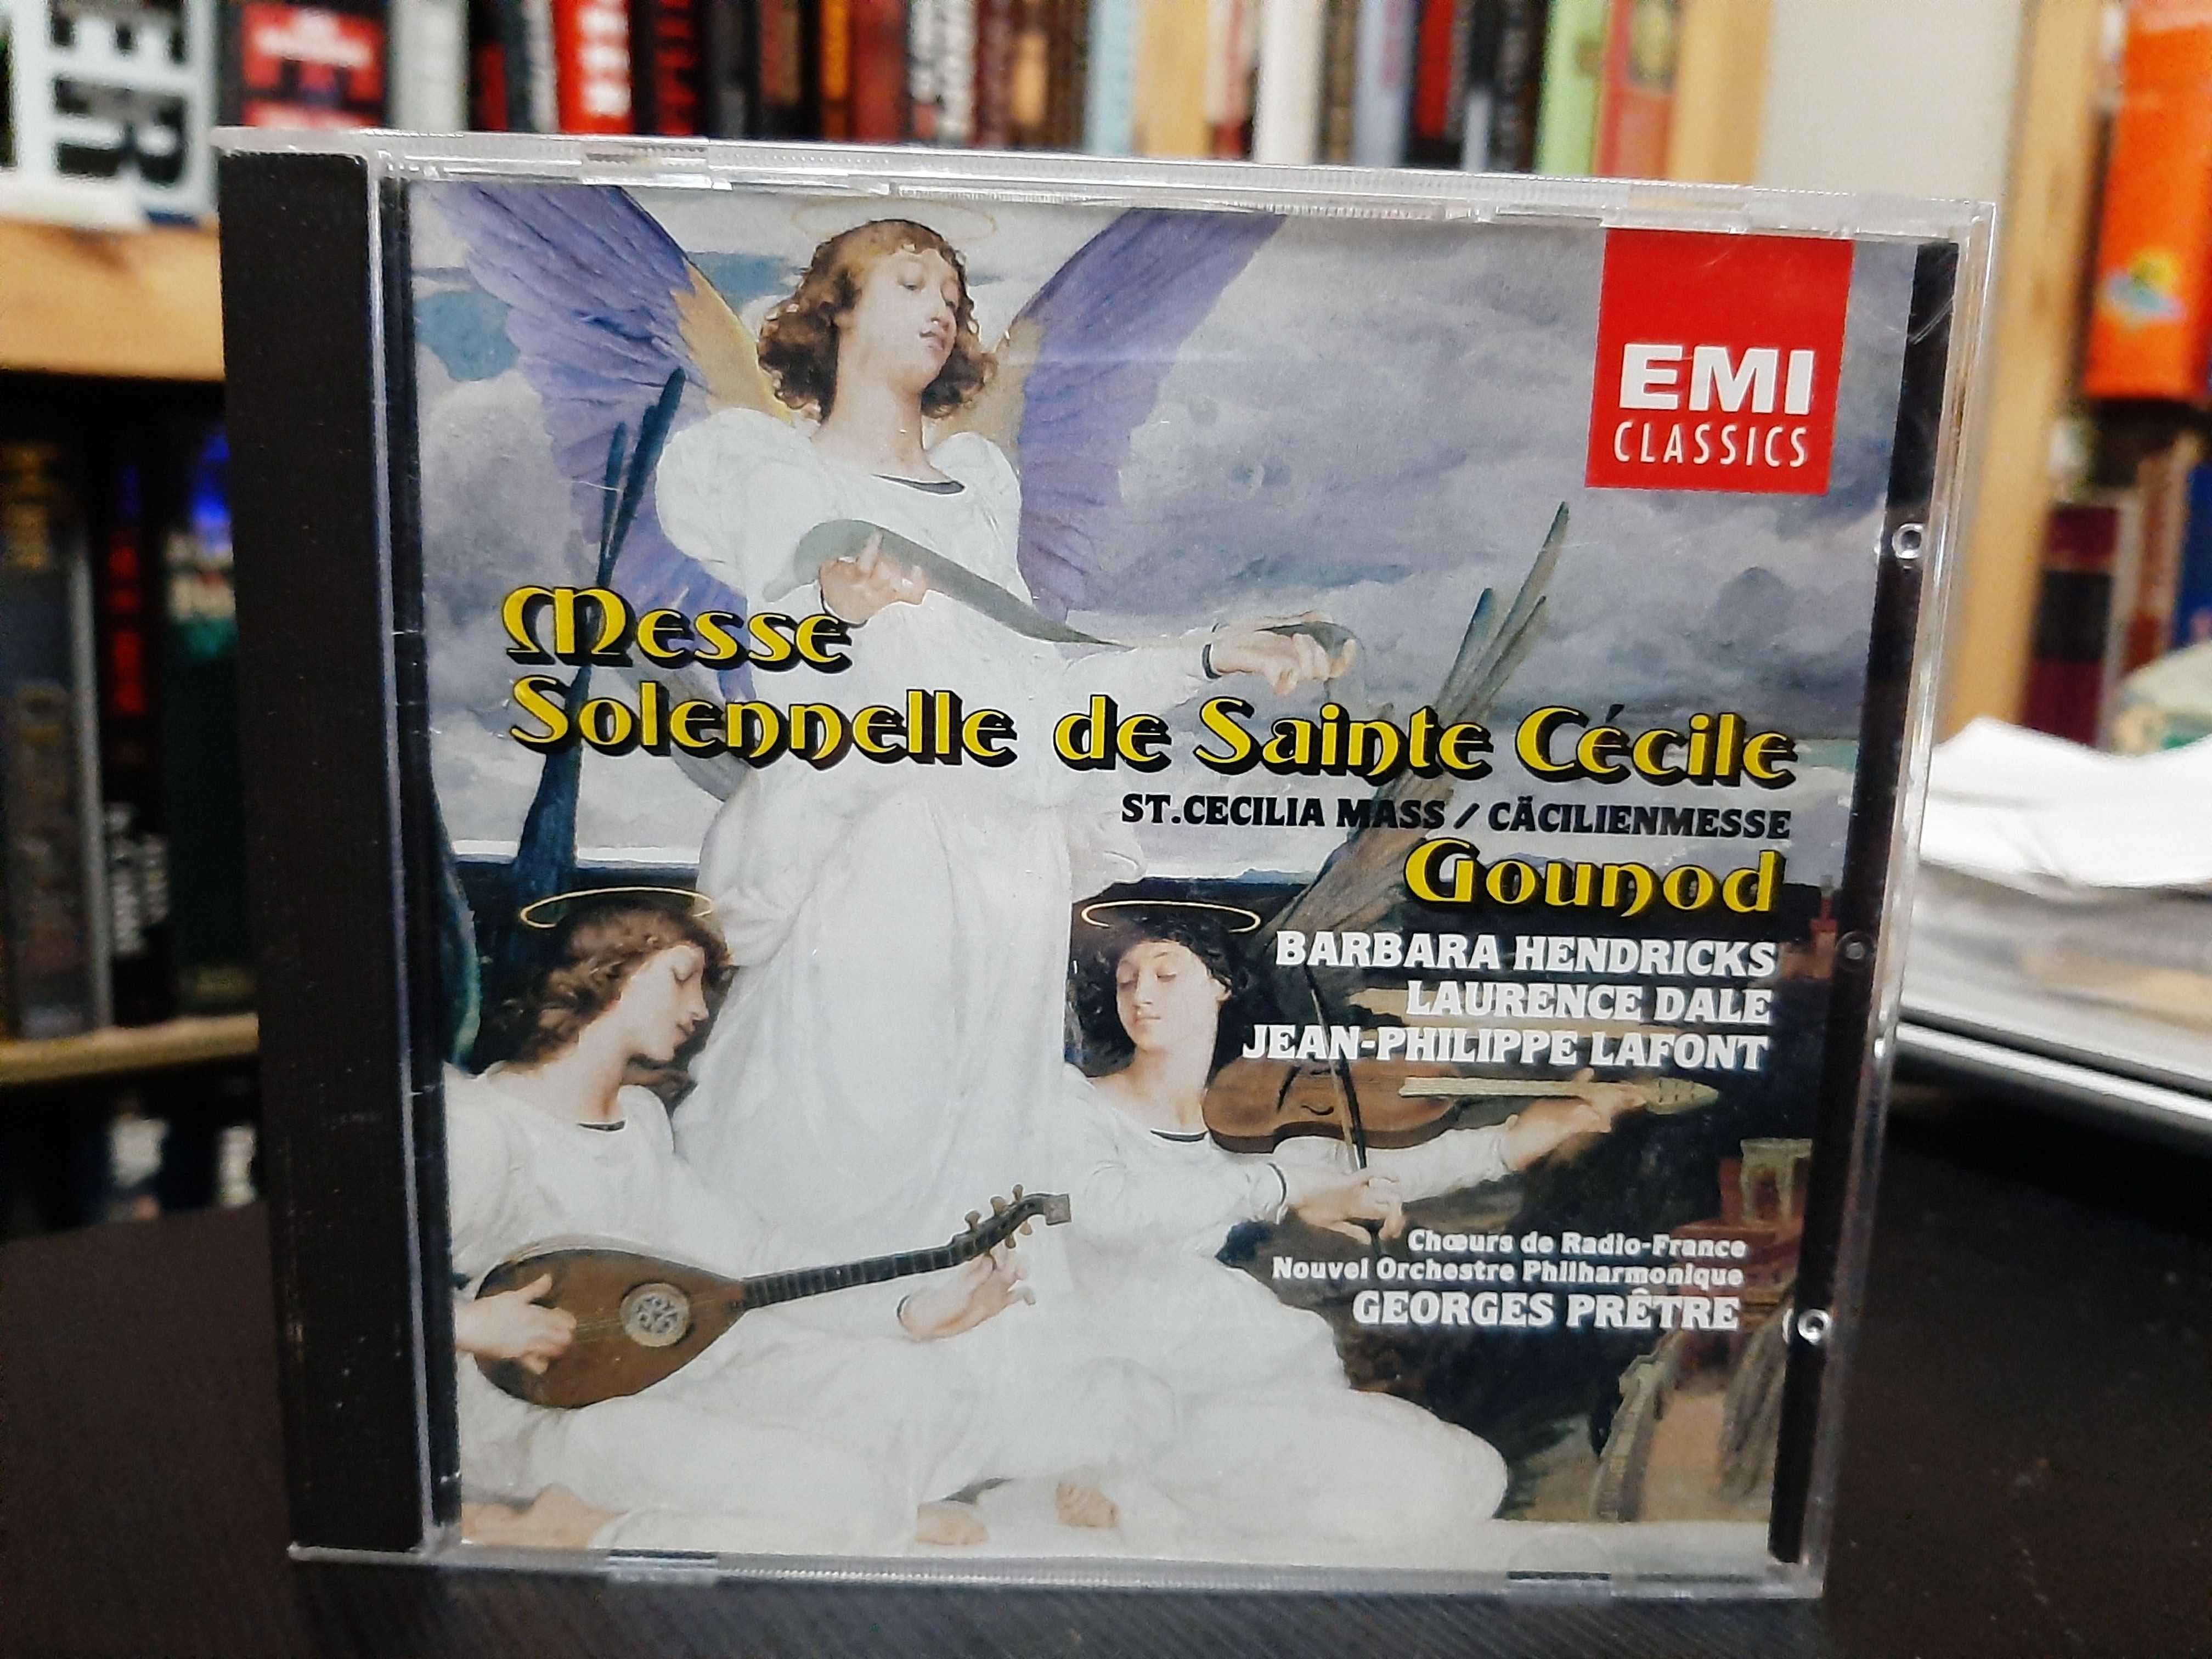 Gounod – Messe Solennelle De Sainte Cécile – Barbara Hendricks, Prêtre